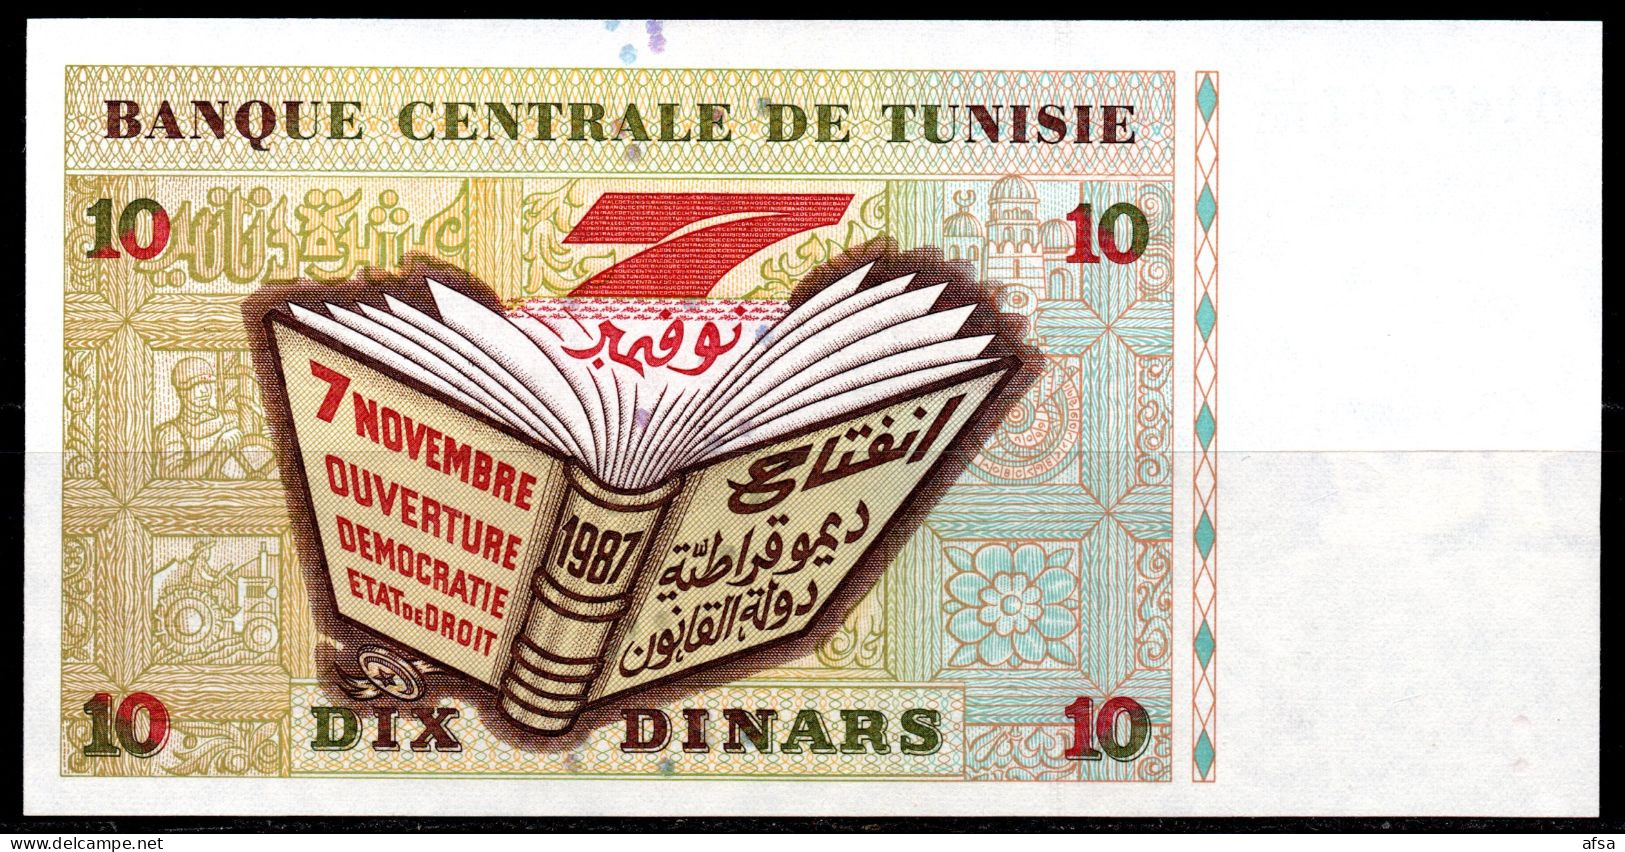 10-Dinars1994-P. 87A-Very Nice Serial N°-trés Beau N° De Série-UNC**-Neuf(2 Scans-2 Images) Envoi Gratuit -Free Shipping - Tunesien